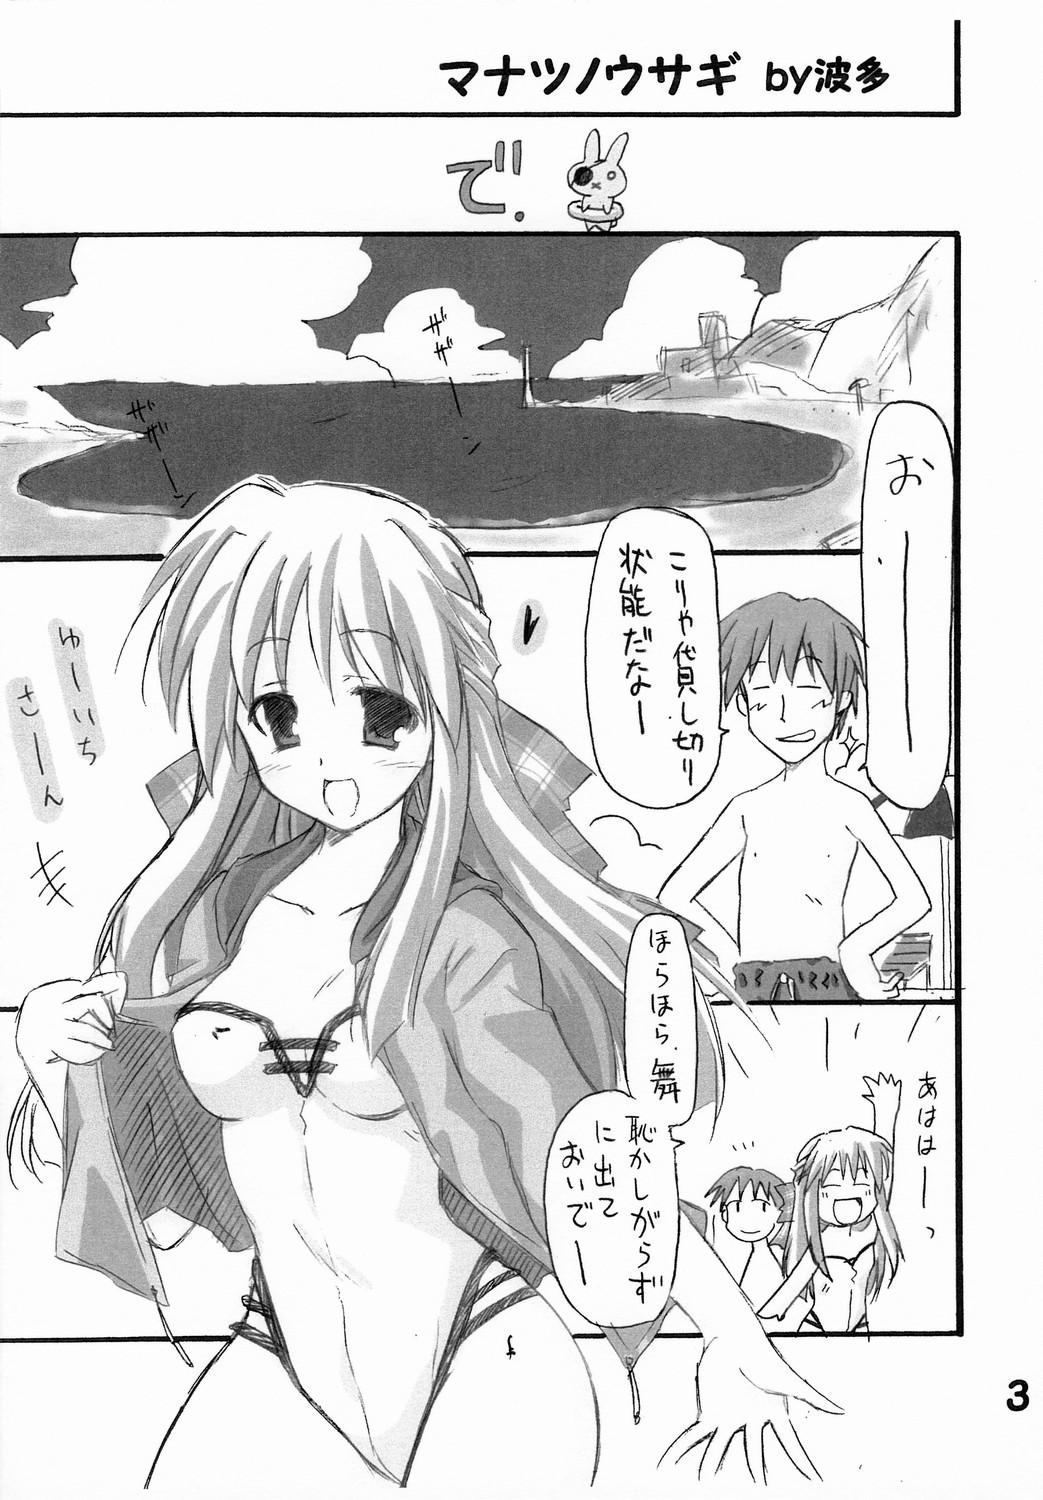 Nalgona Haru na no ni - Manatsu no Usagi - Kanon Cream - Page 4